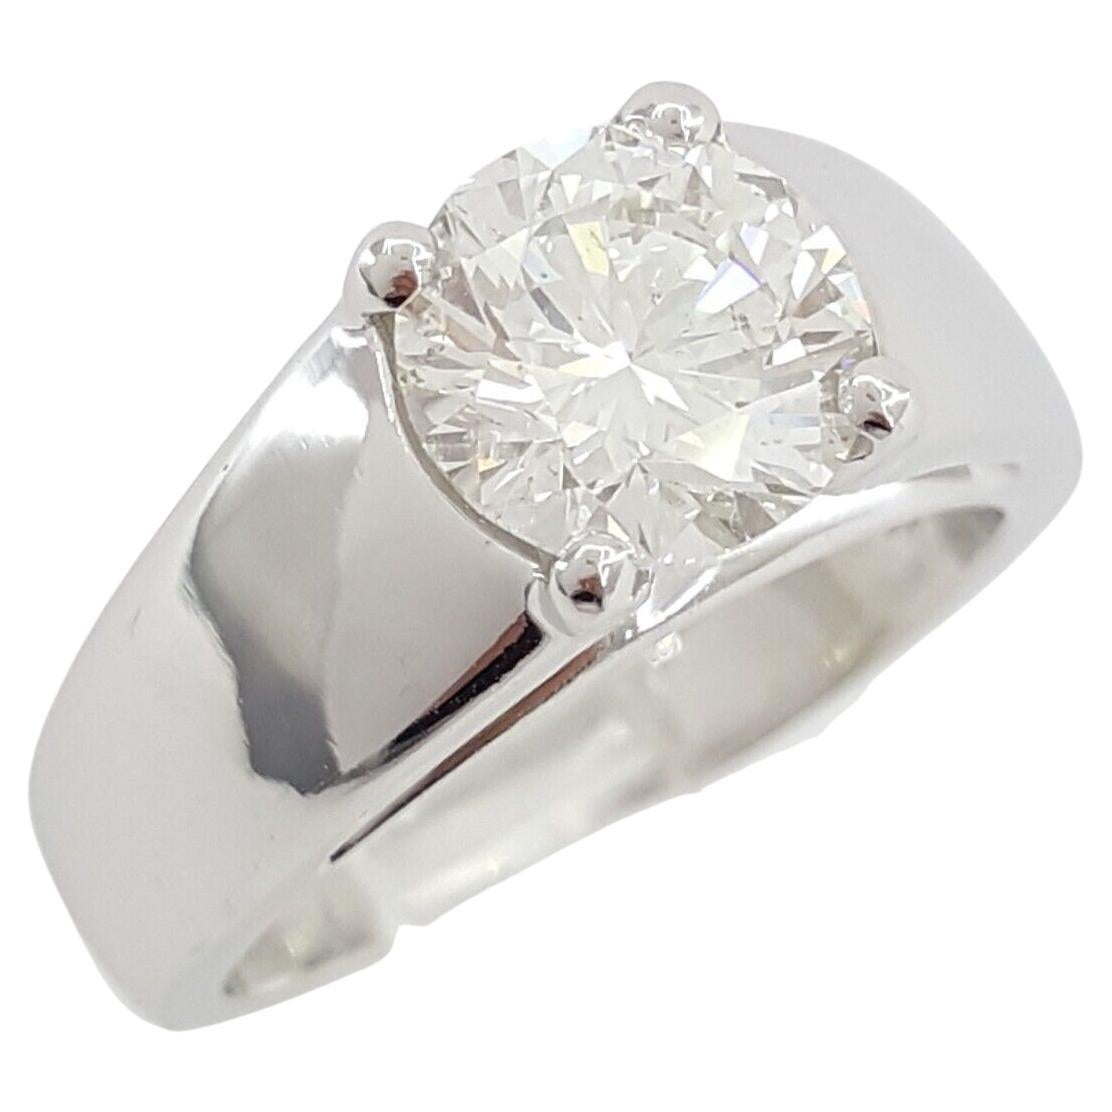 Bulgari 1.51 ct Round Brilliant Cut Diamond Solitaire Engagement Ring
the exquisite ring is set in solid platinum